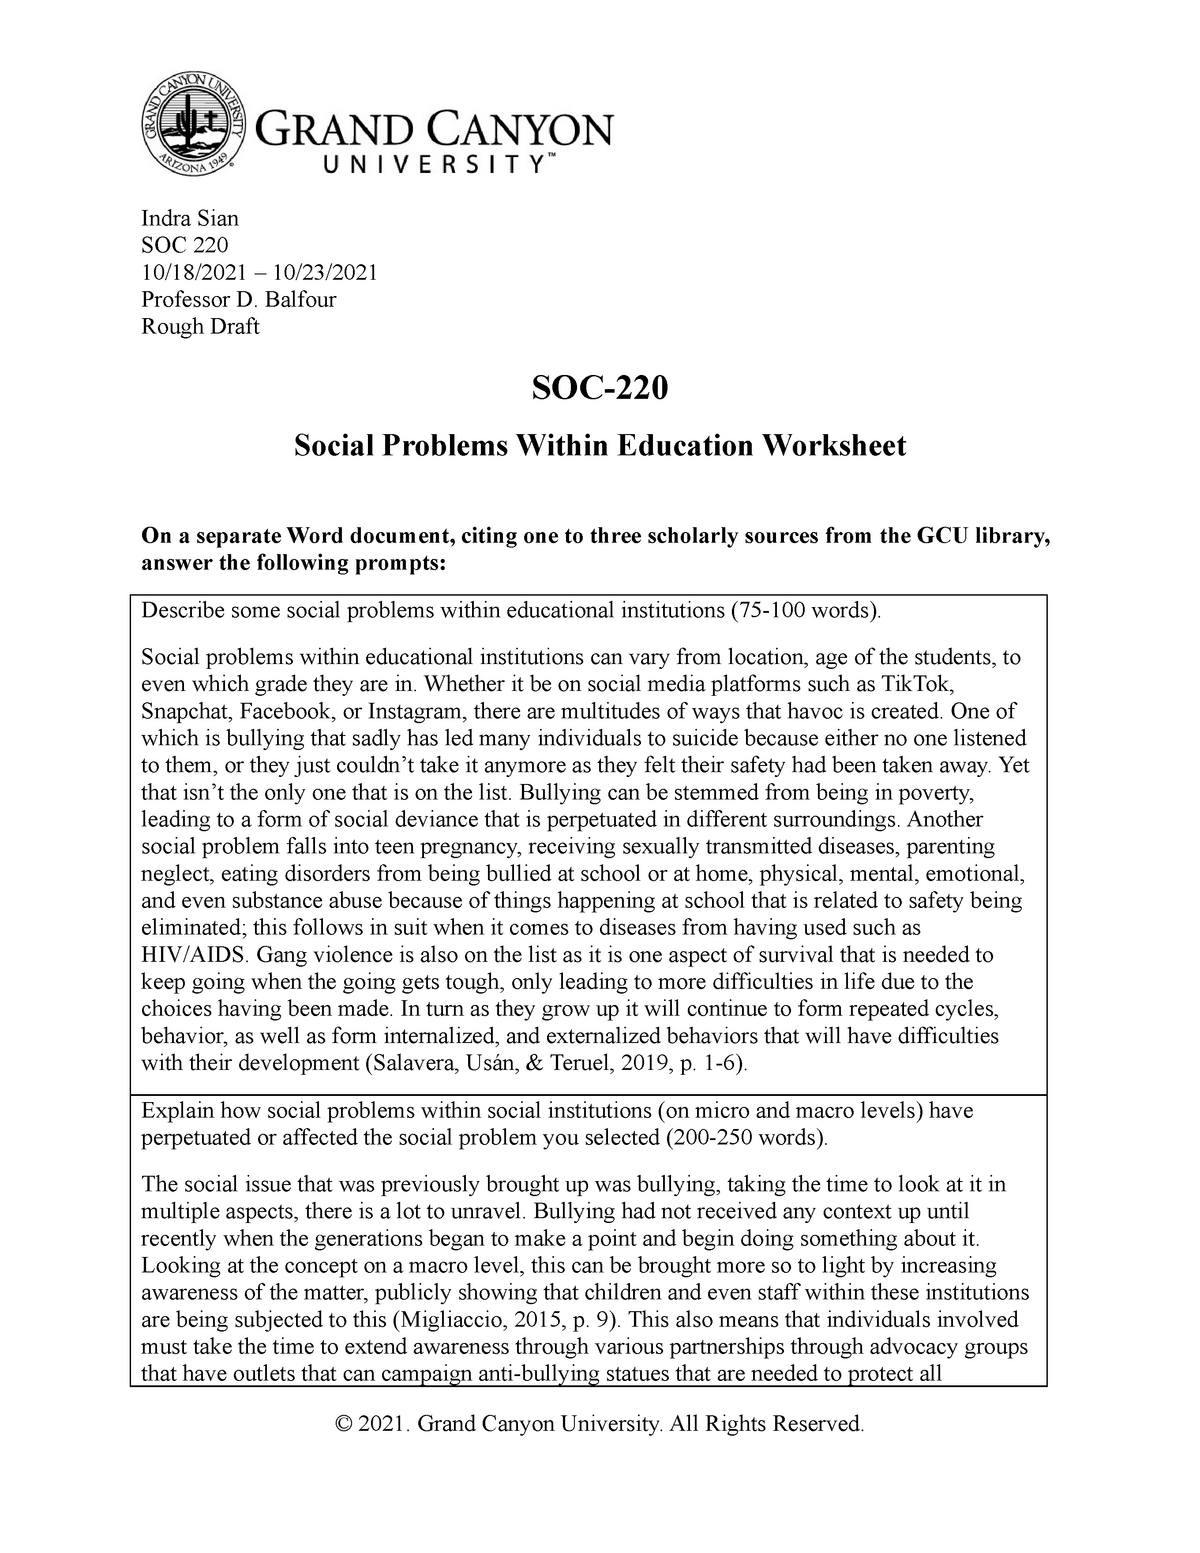 soc 220 social problem final essay